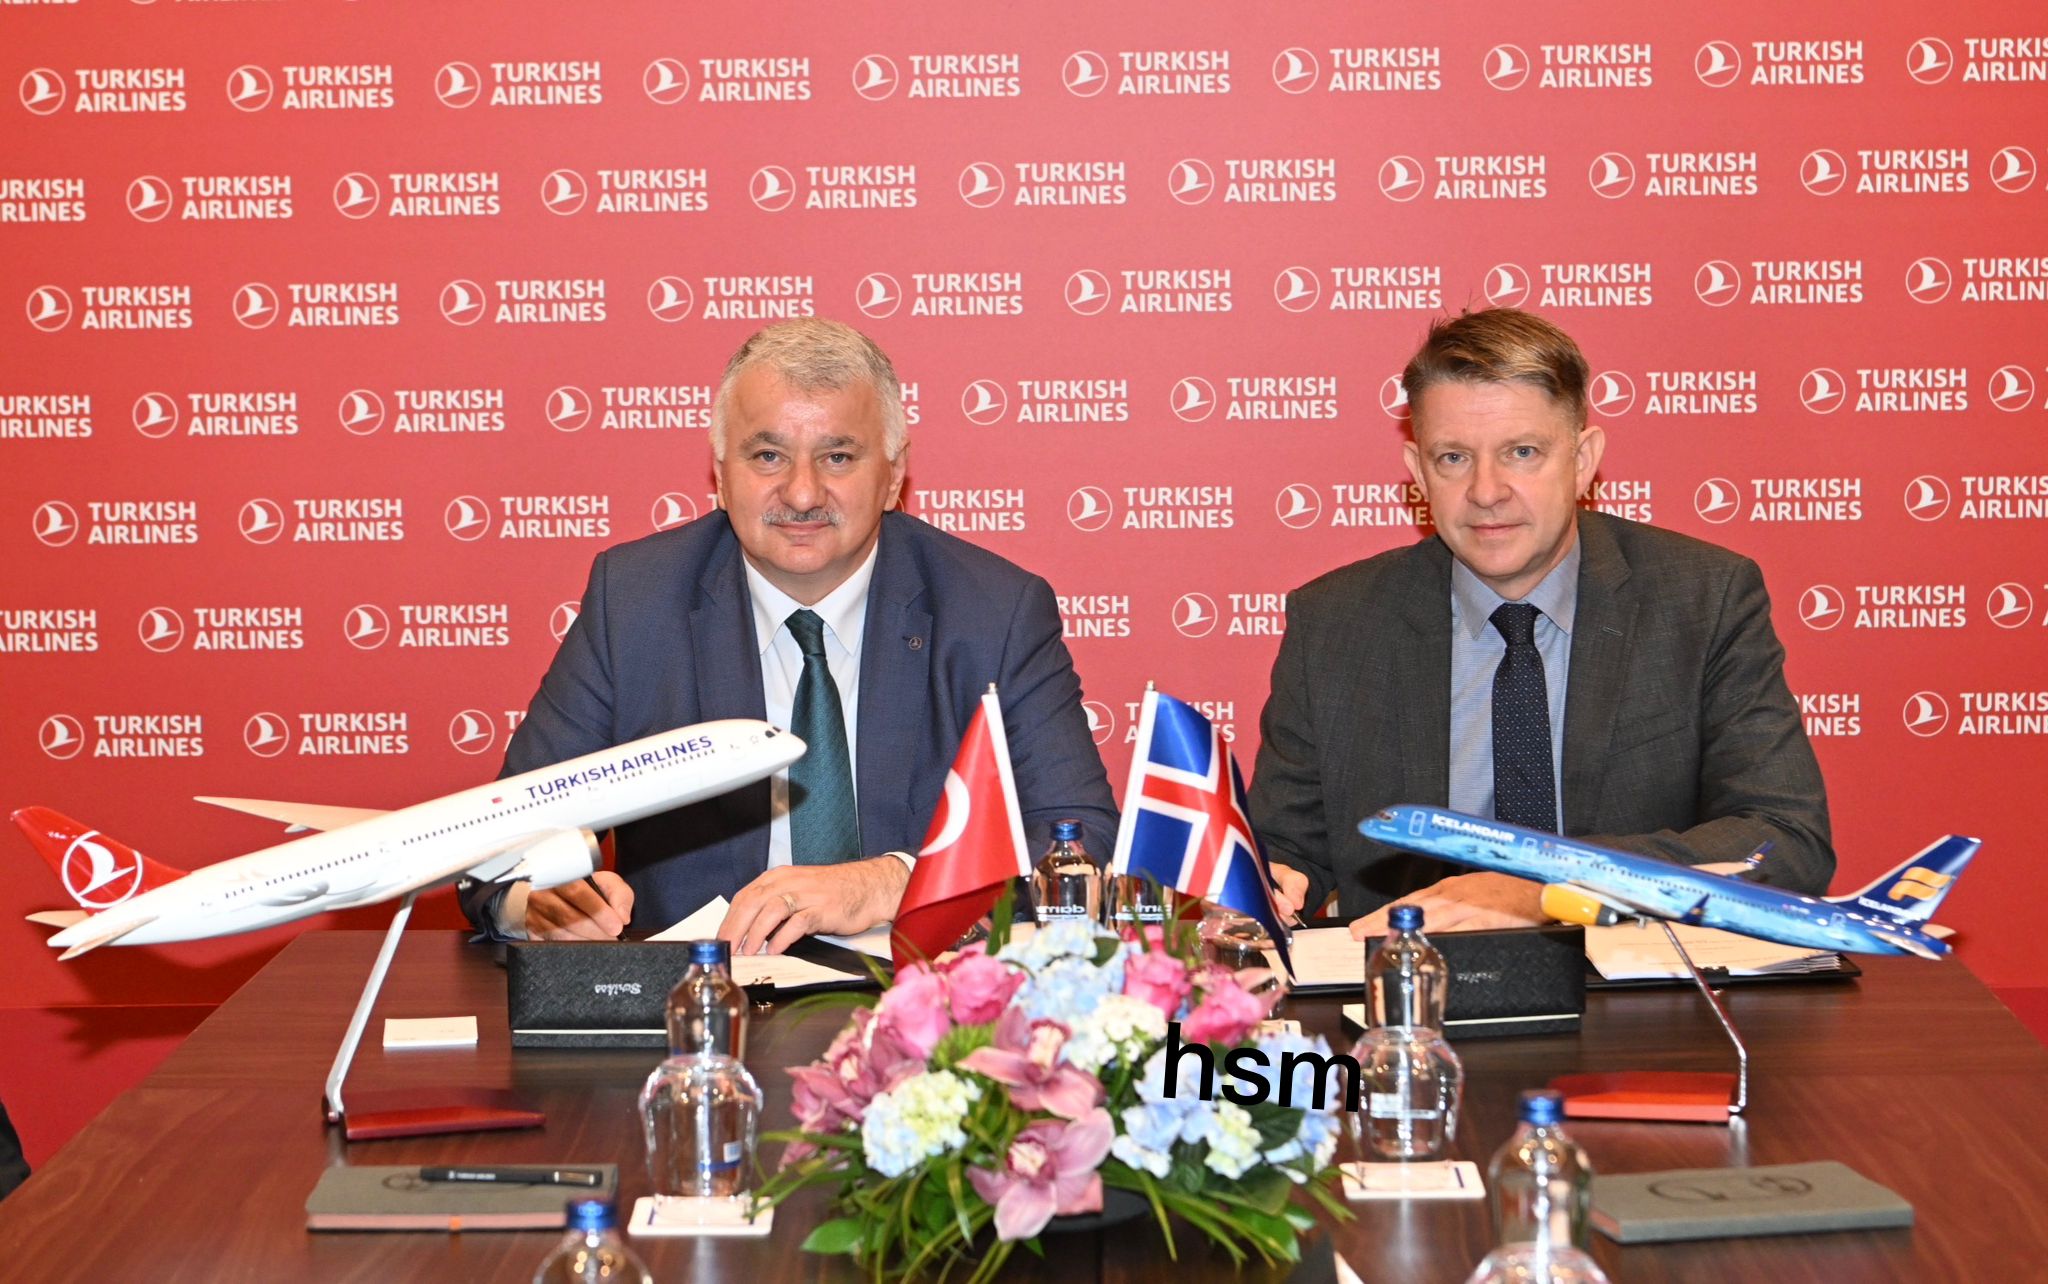 Türk Hava Yolları, Icelandair ile Ortak Uçuş Anlaşması İmzaladı.